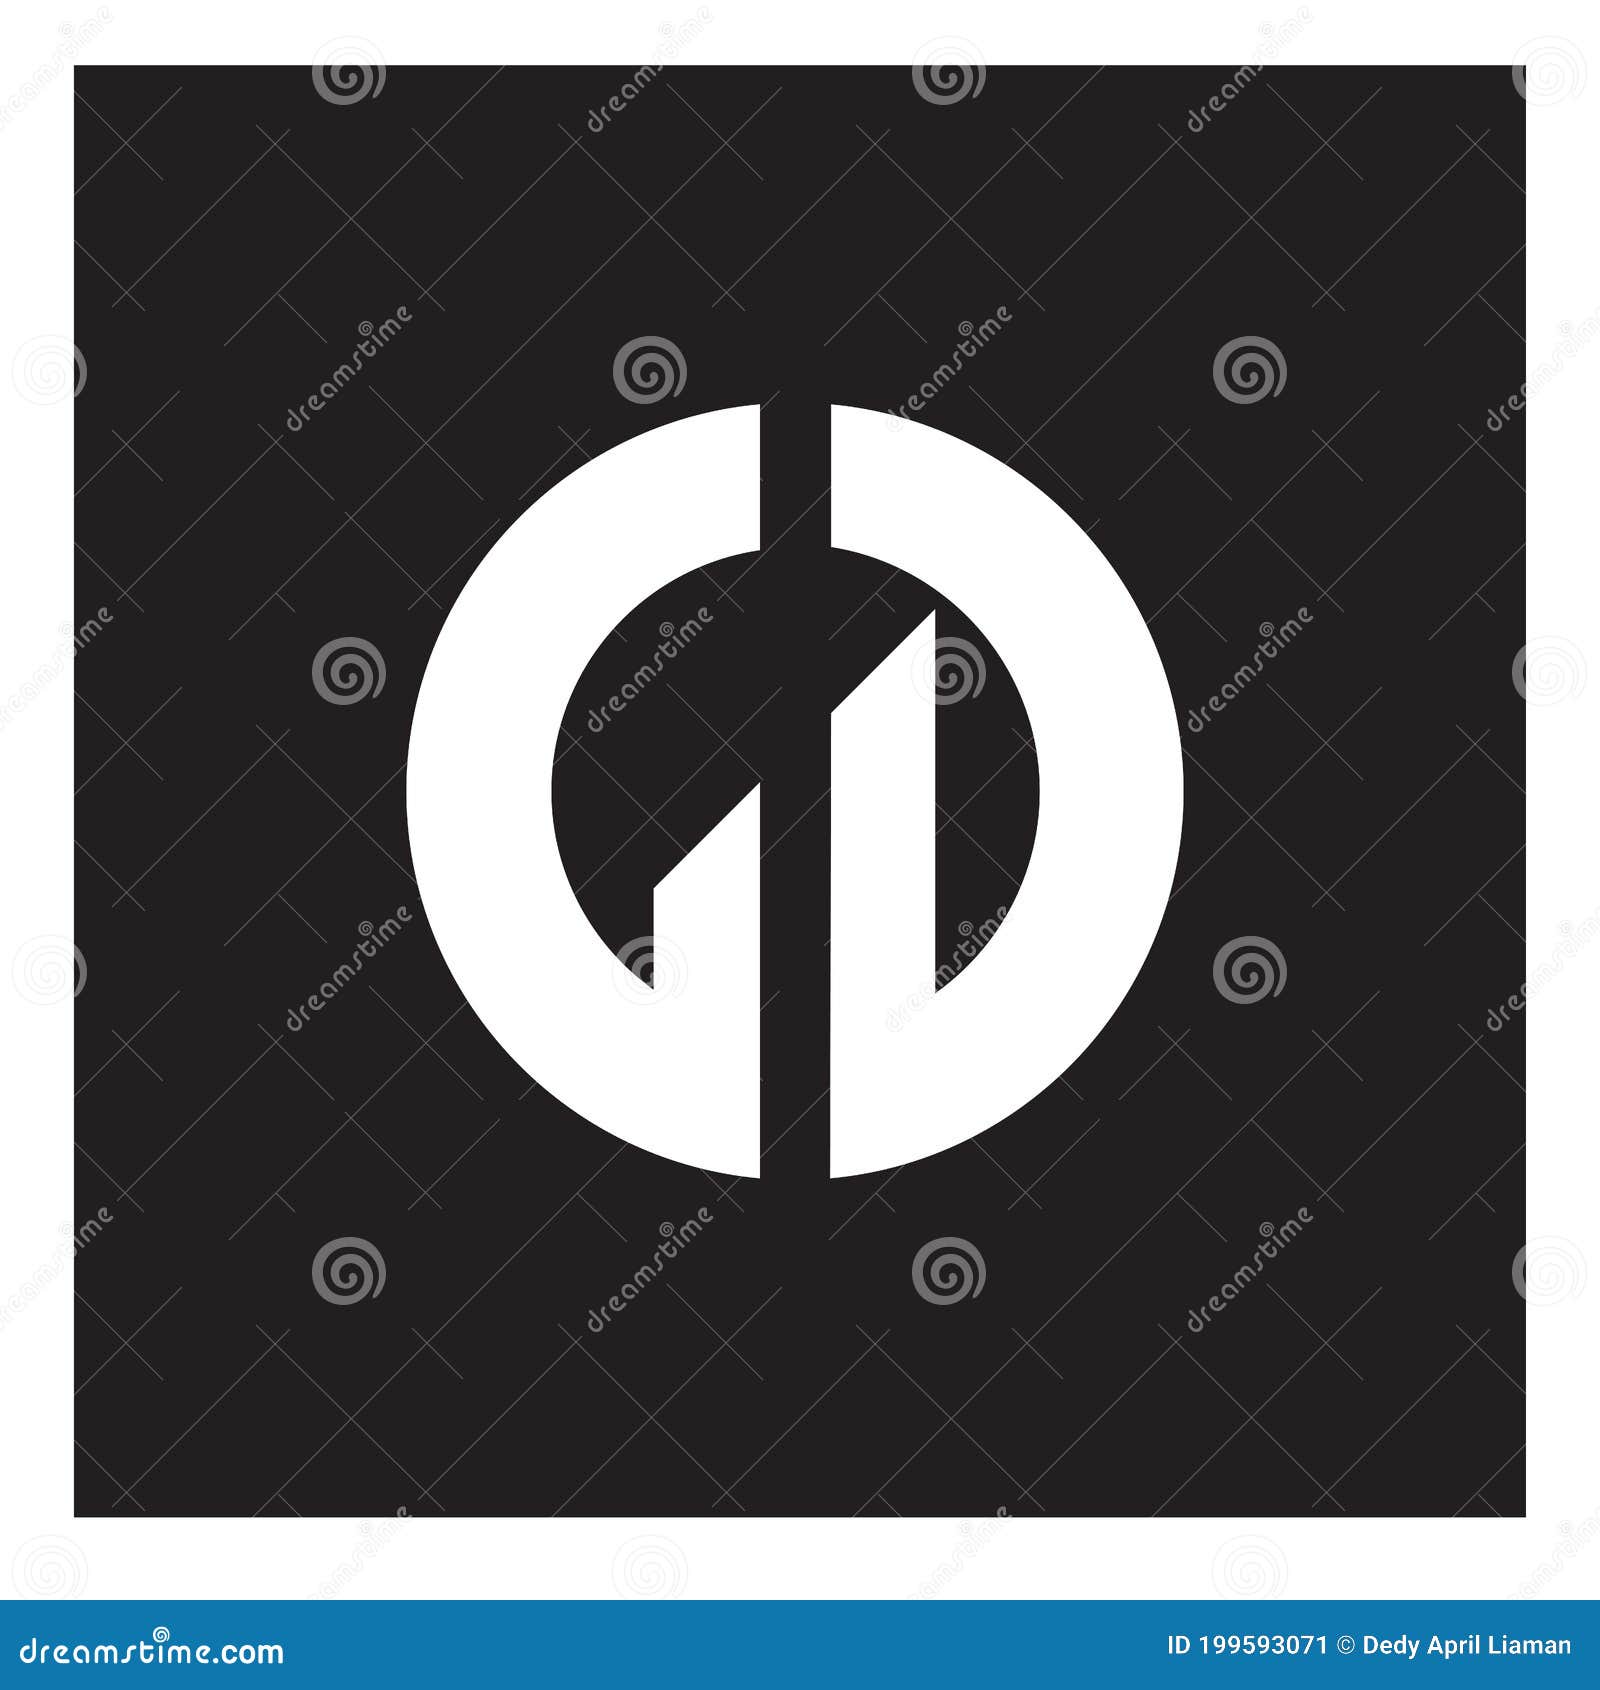 gd monogram logo letter  profesional